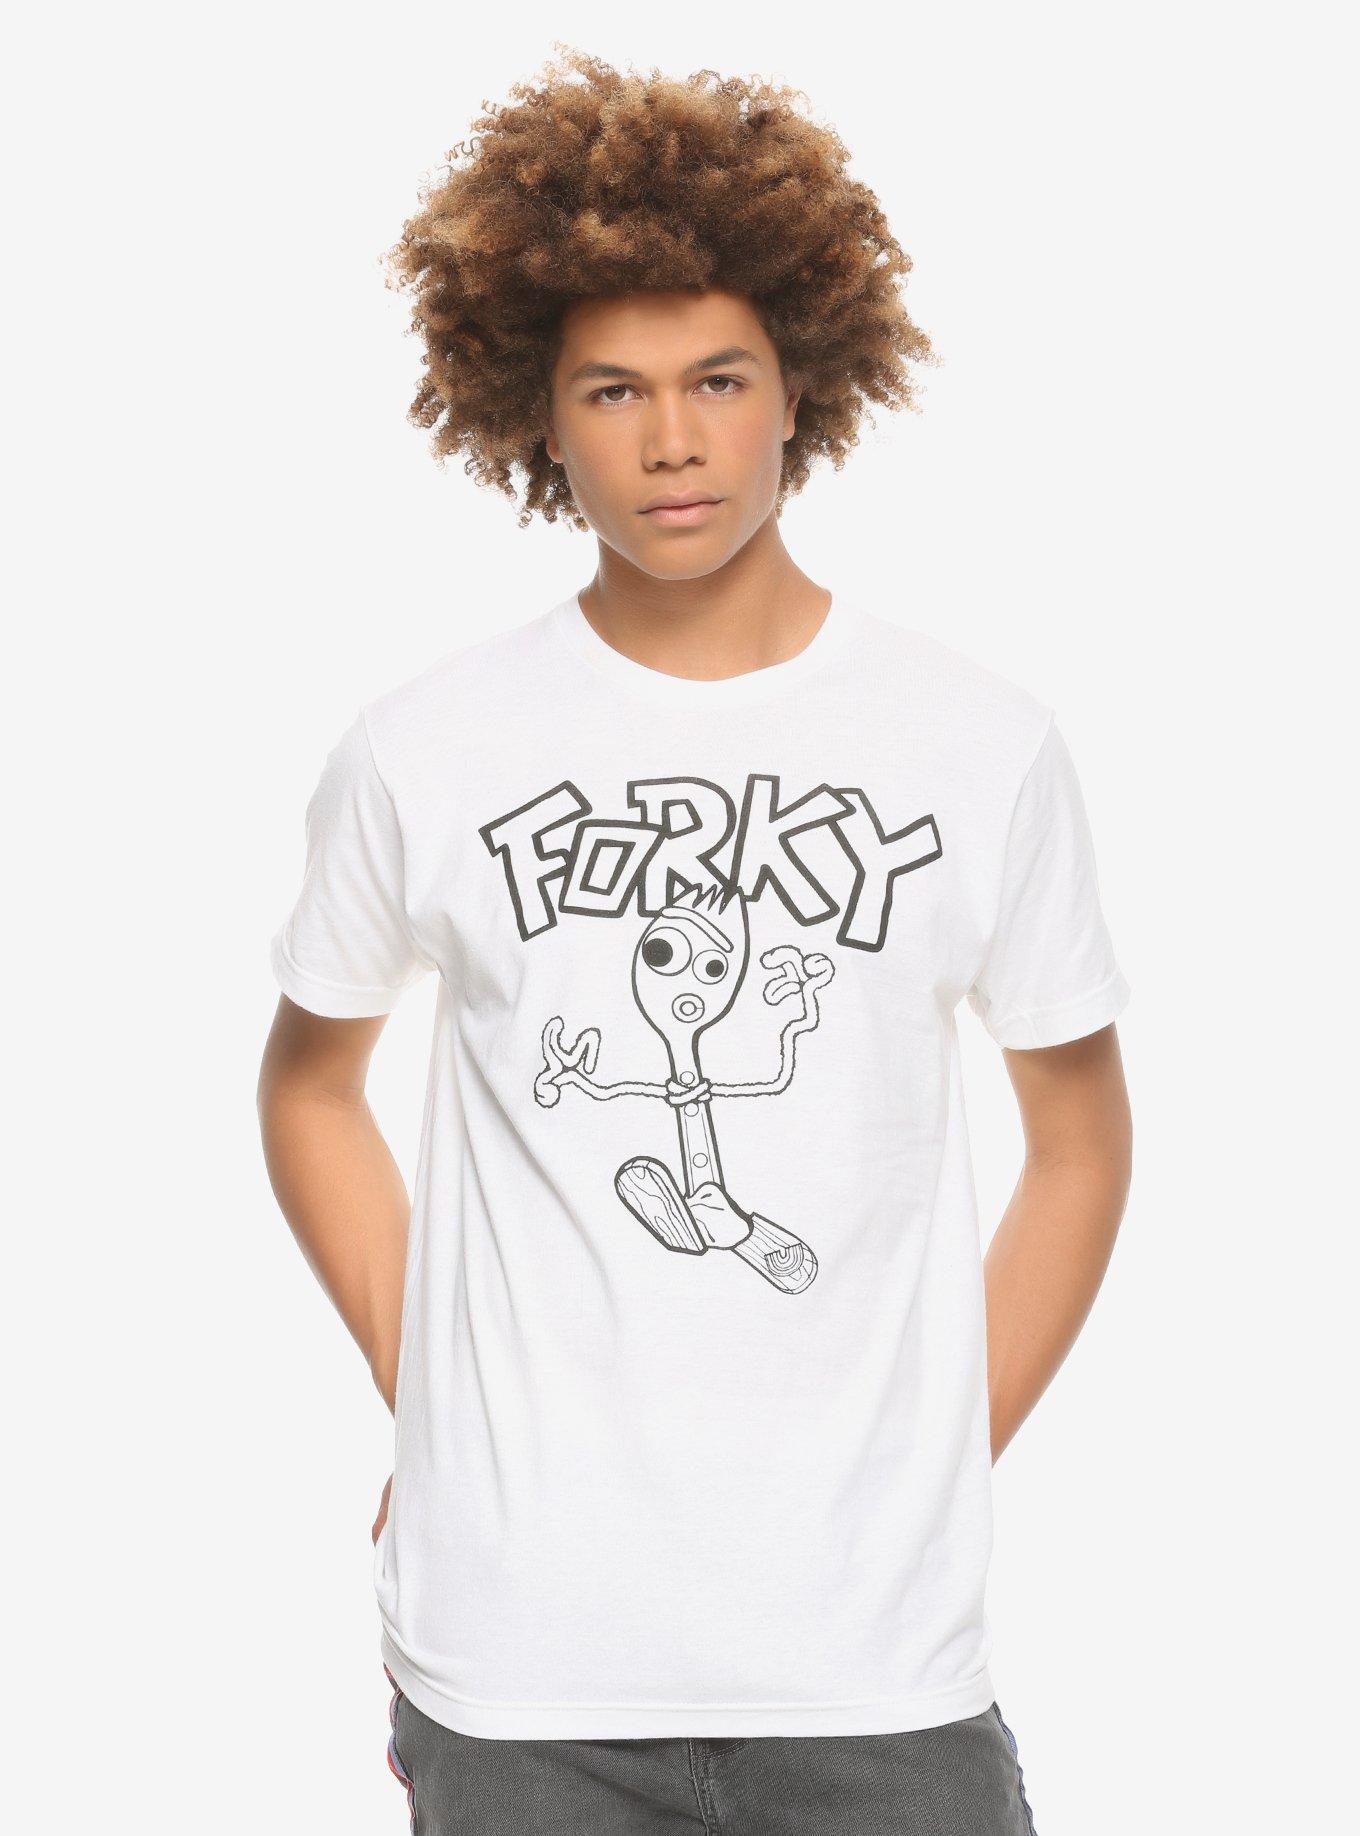 Disney Pixar Toy Story 4 Forky T-Shirt, WHITE, alternate